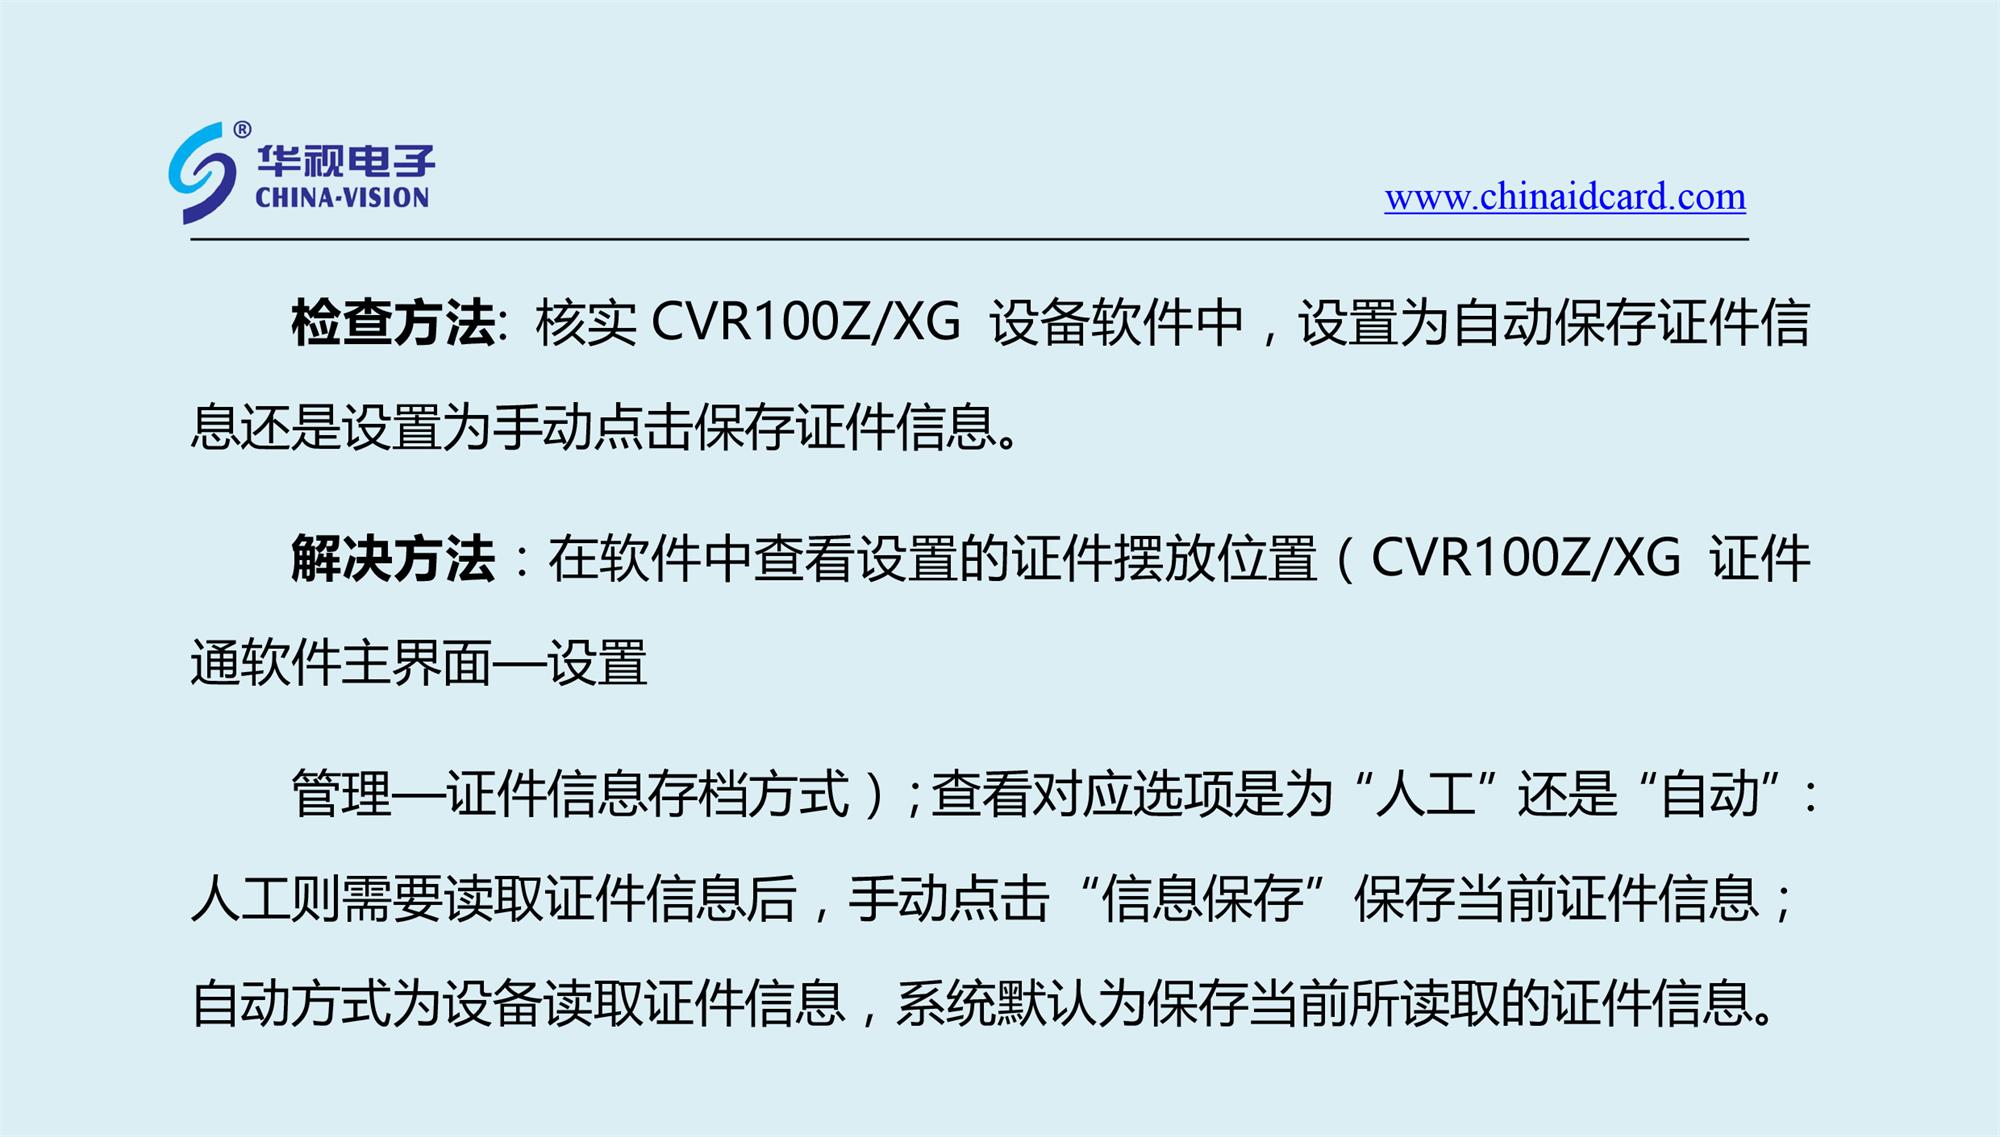 CVR100ZXG设备初始化成功，能够正常读取二代证， 但是对应软件的数据查询中没有对应相关信息记录？-1.jpg